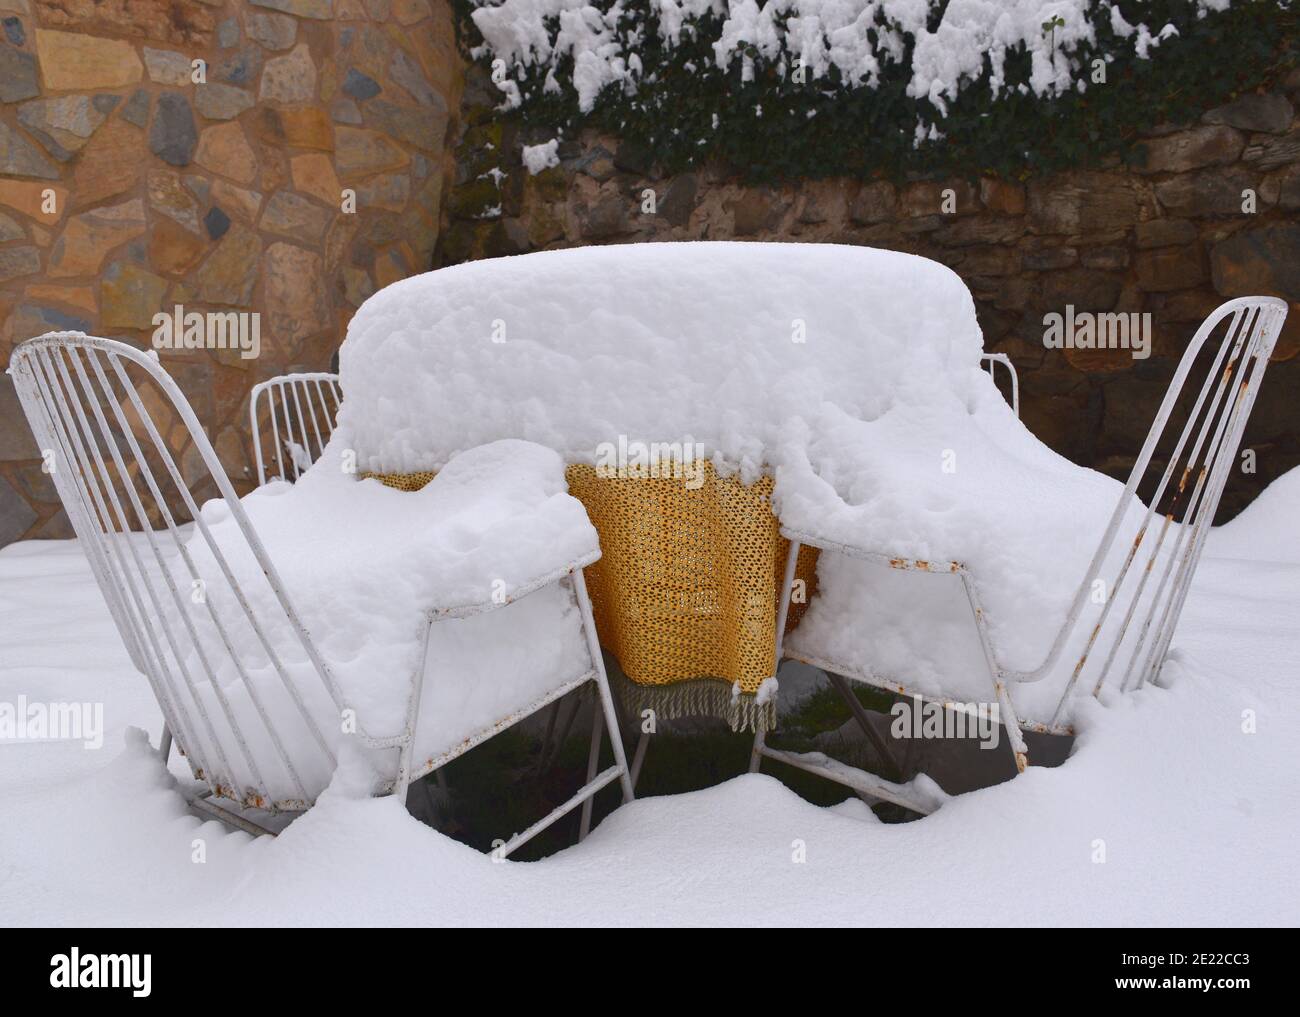 Table avec nappe orange-jaune et deux chaises recouvertes de neige. Scène de jardin après le passage de la tempête Filomena à travers l'Espagne. Janvier 2021. Banque D'Images